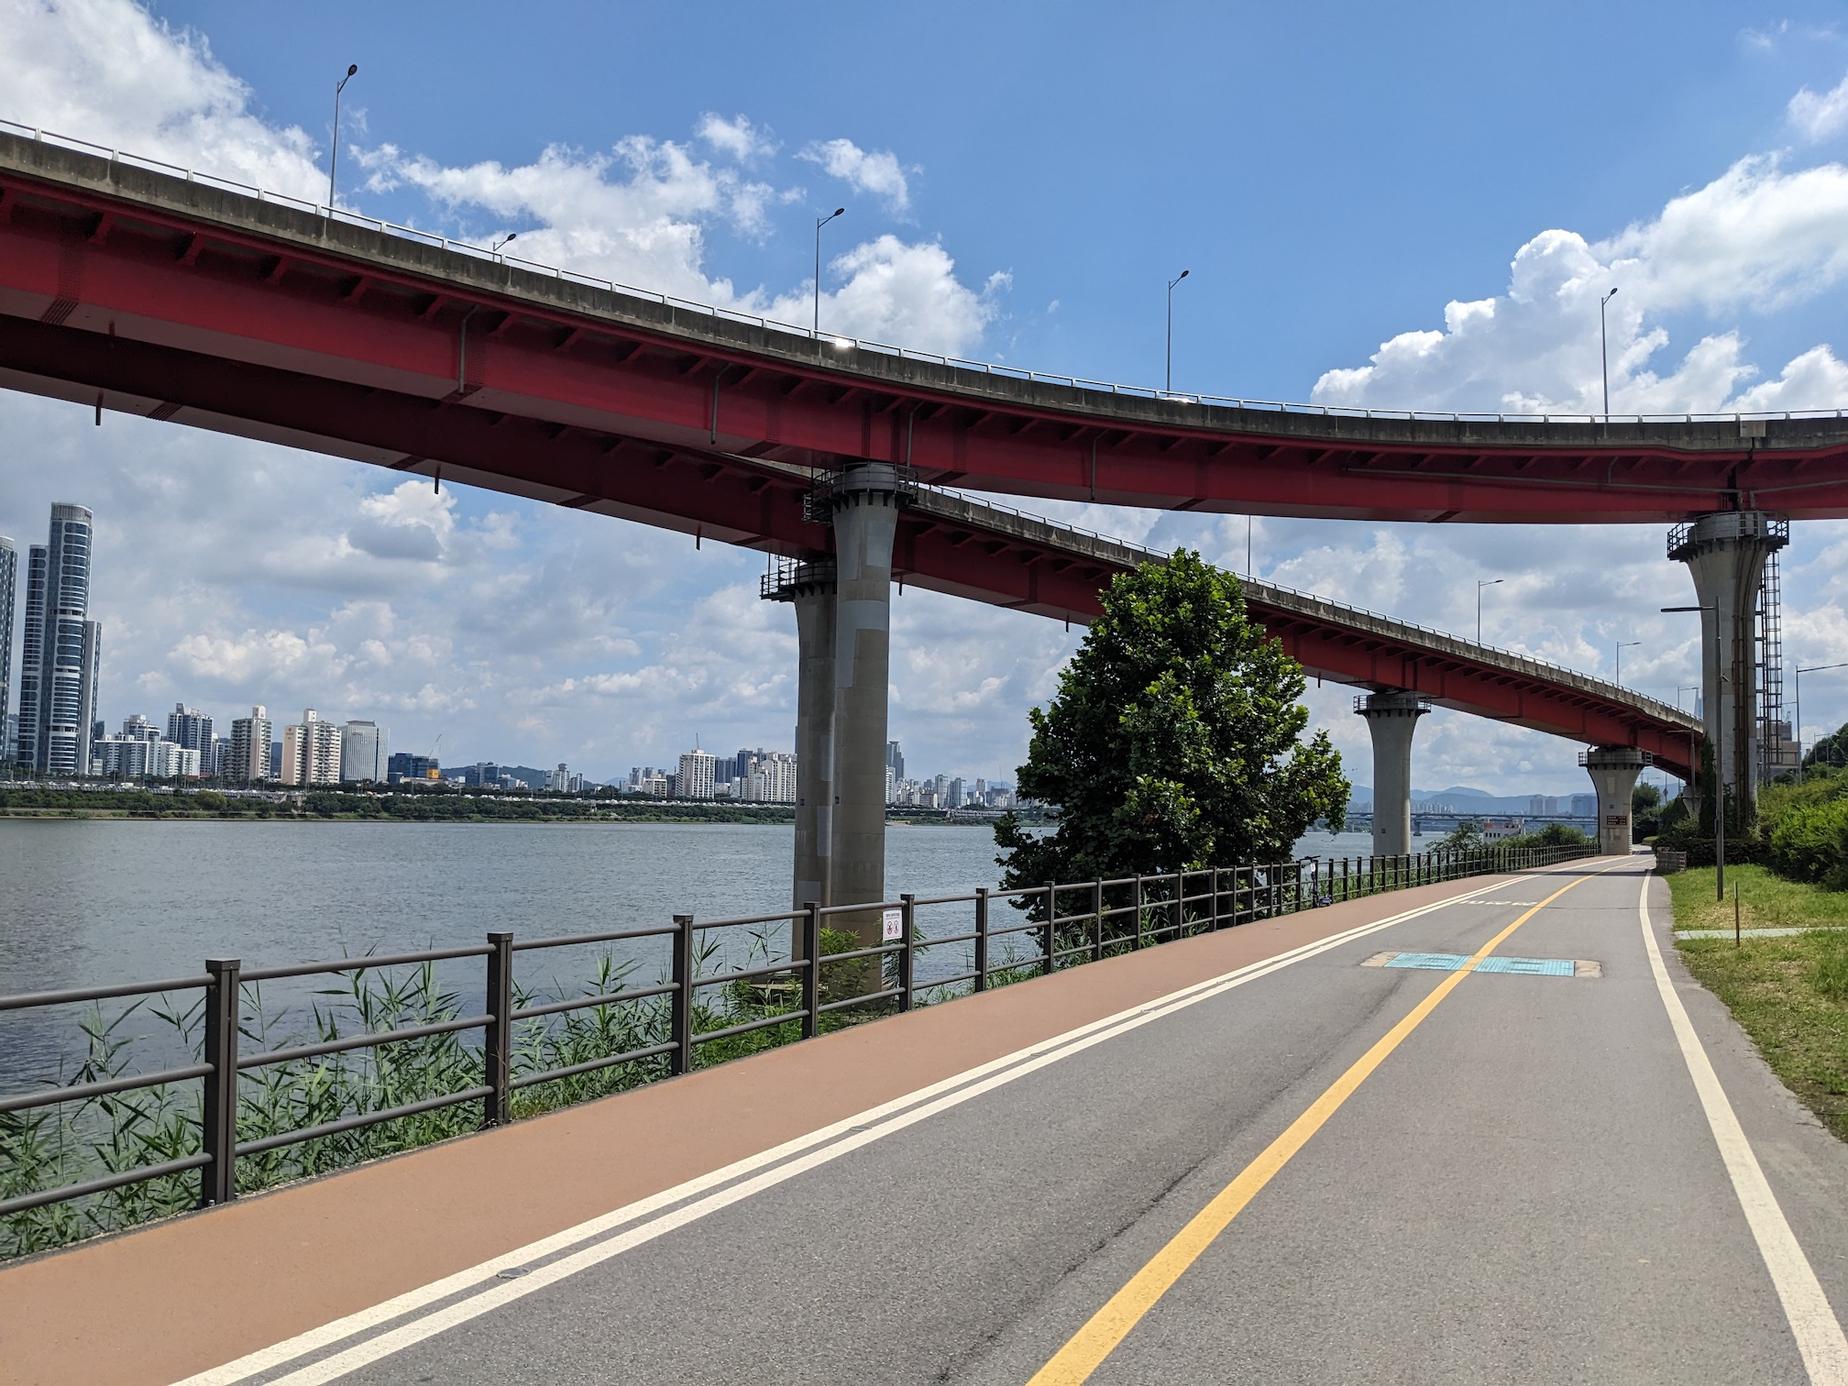 Han river bike path in Seoul